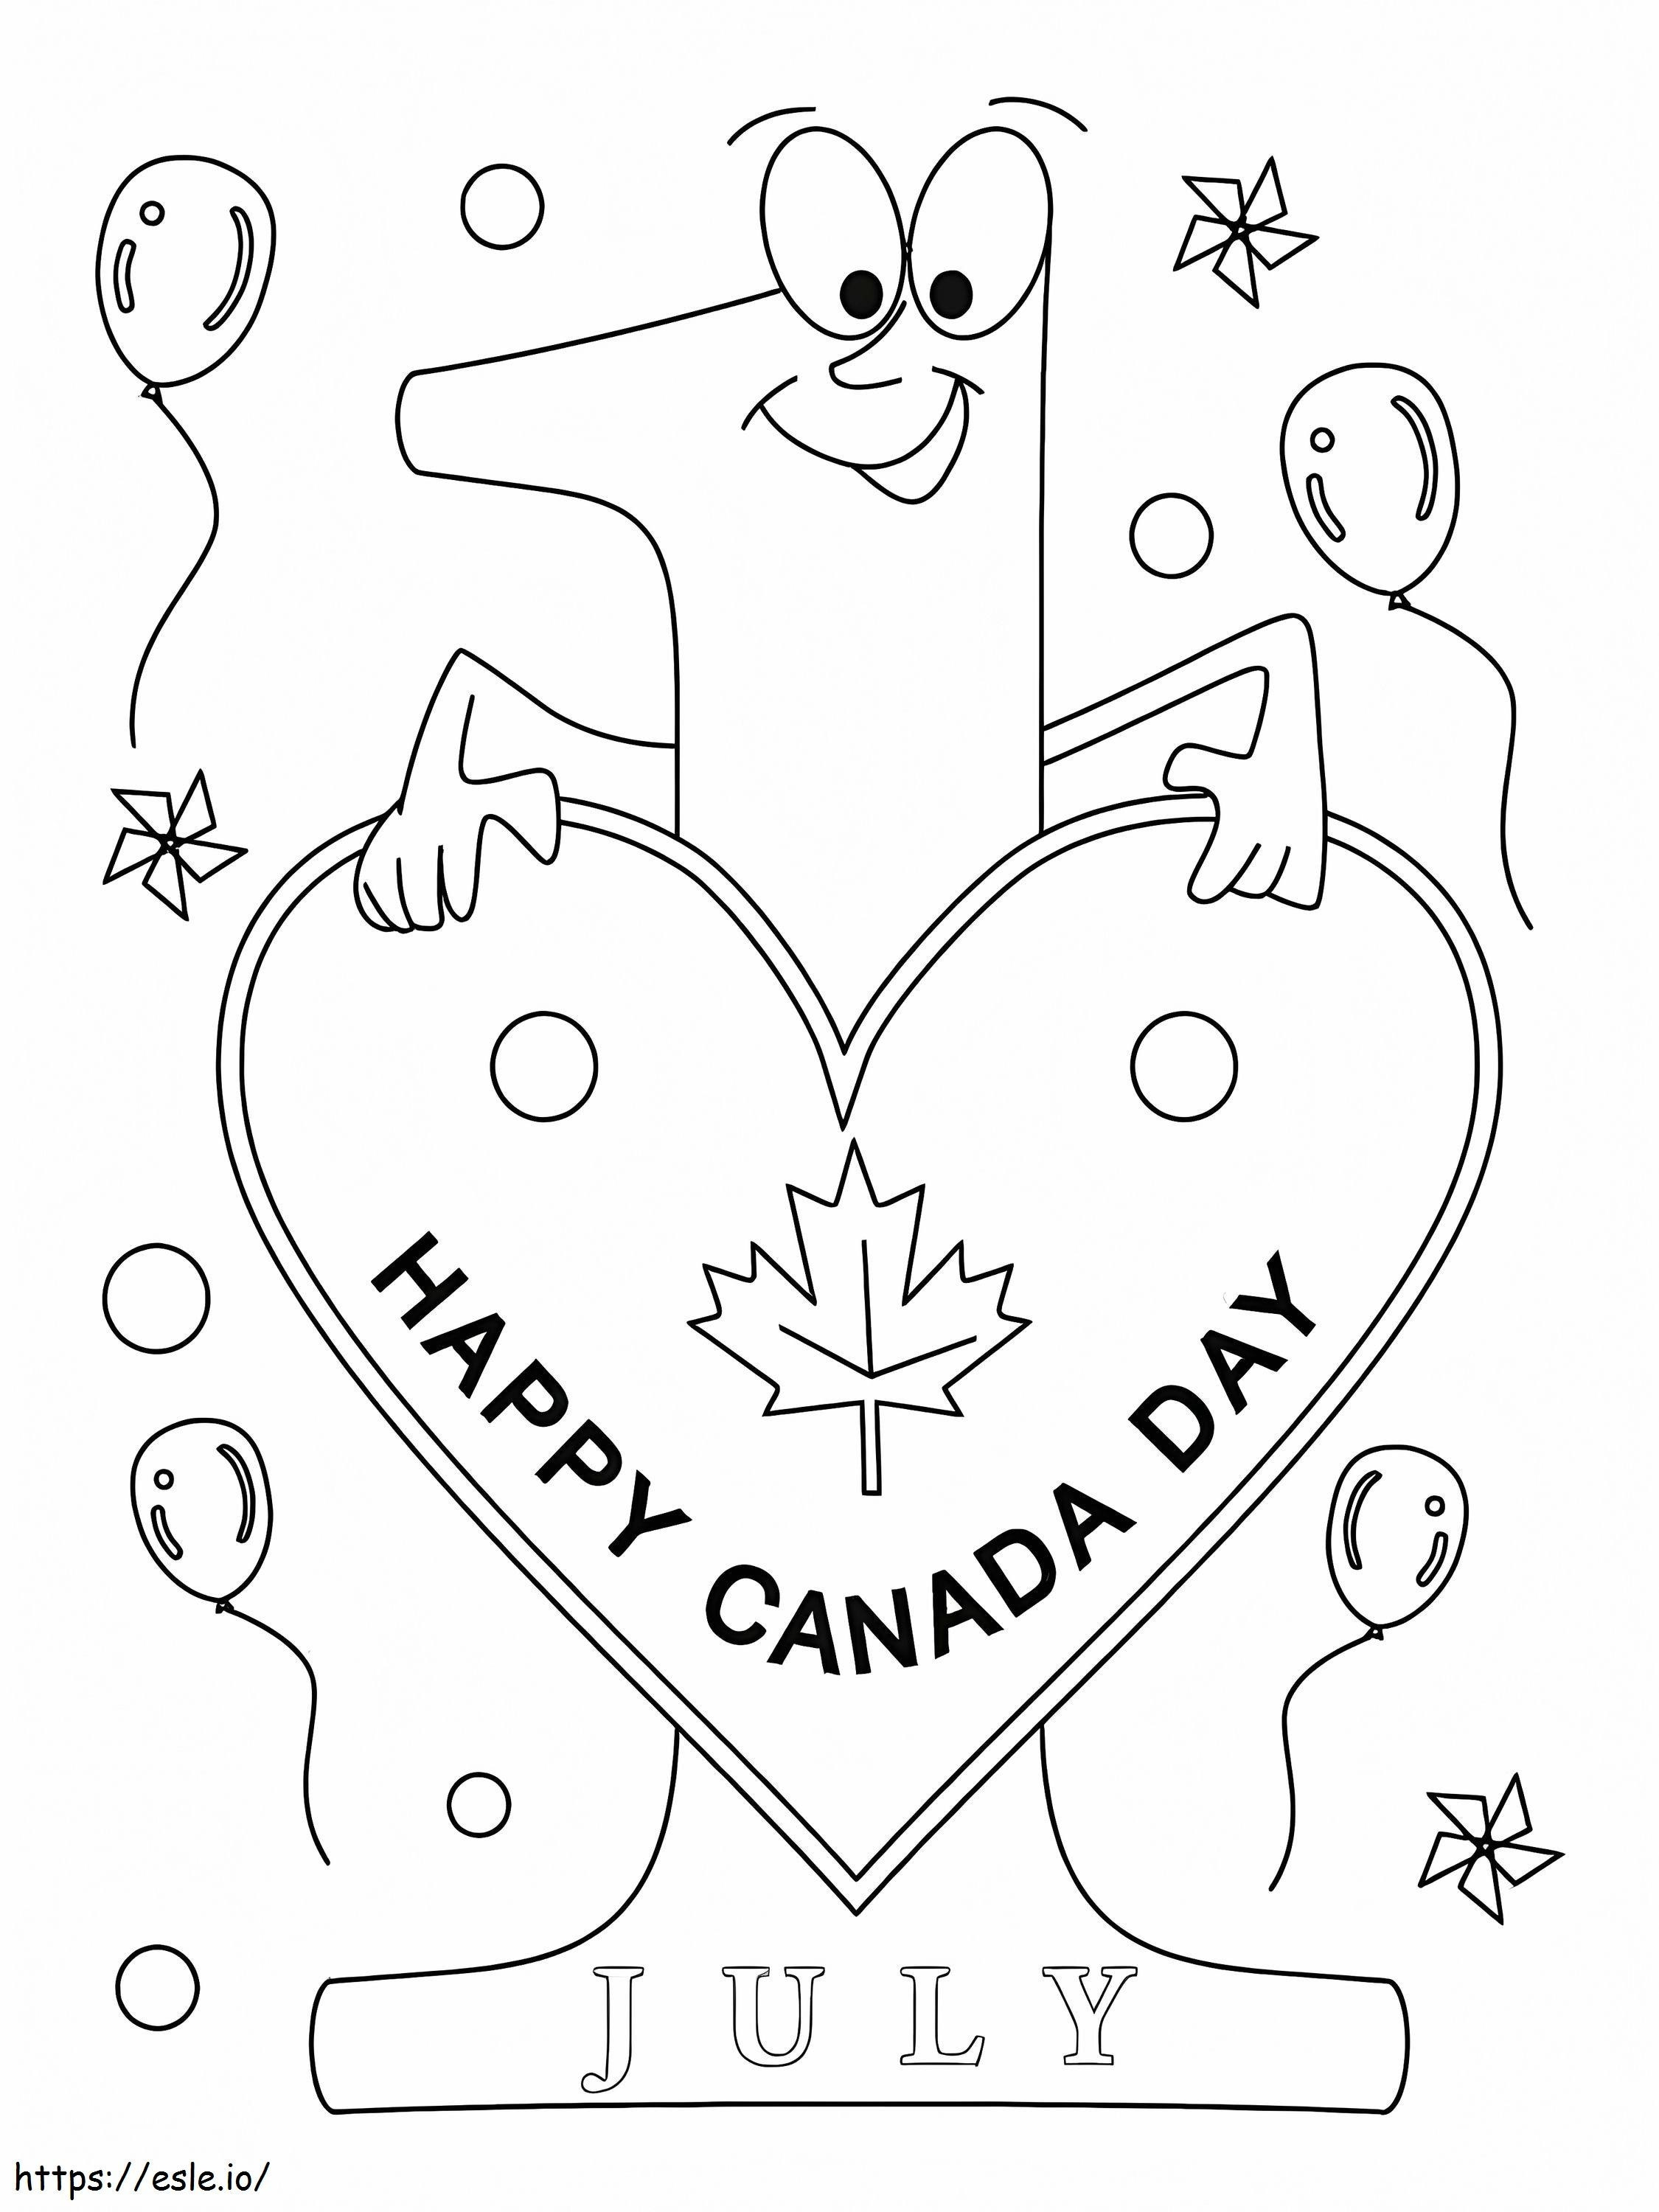 Szczęśliwego Dnia Kanady 9 kolorowanka